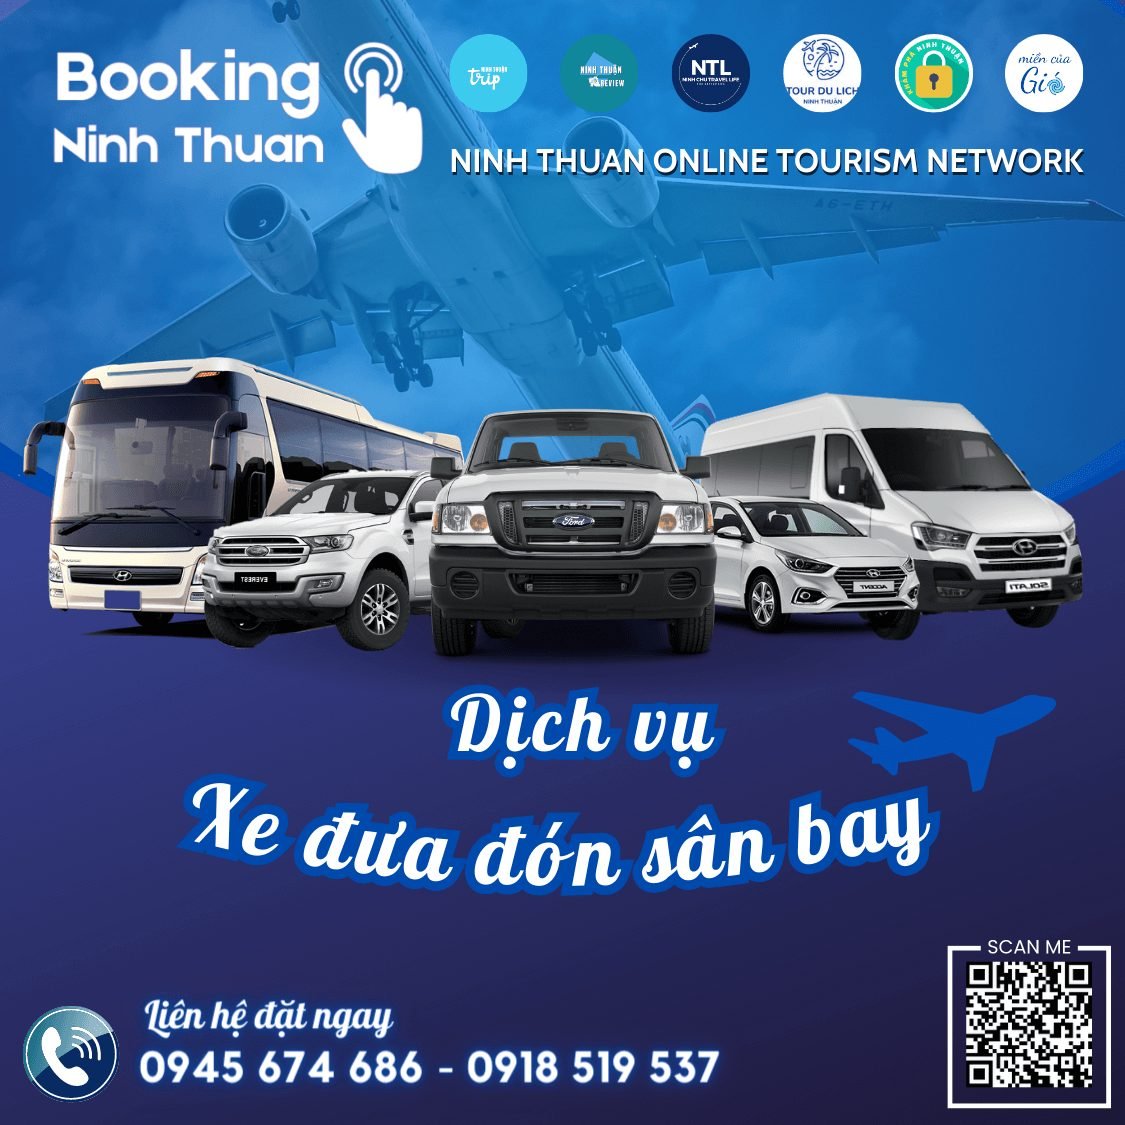 Dịch vụ xe đưa đón sân bay Cam Ranh Ninh Thuận được rất nhiều du khách quan tâm & lựa chọn. Ảnh: Booking Ninh Thuan